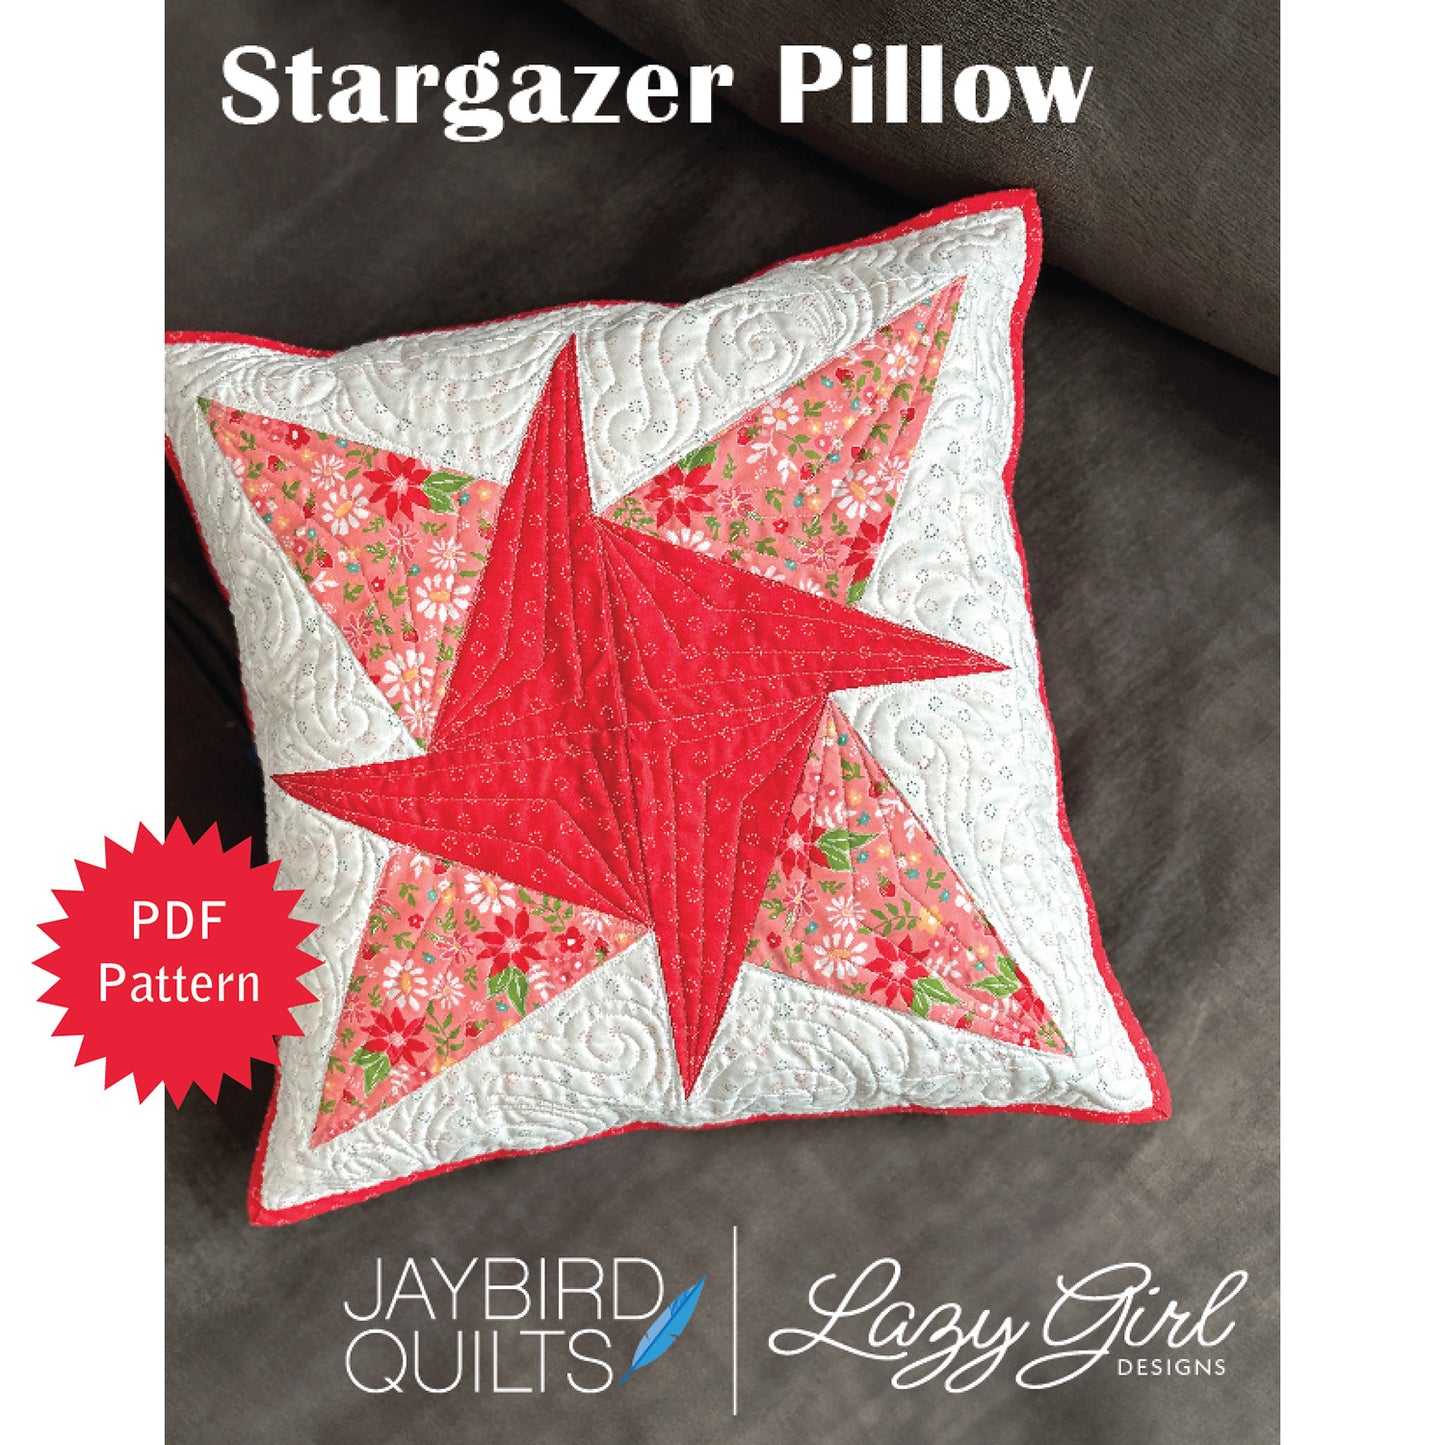 Stargazer Pillow PDF Pattern